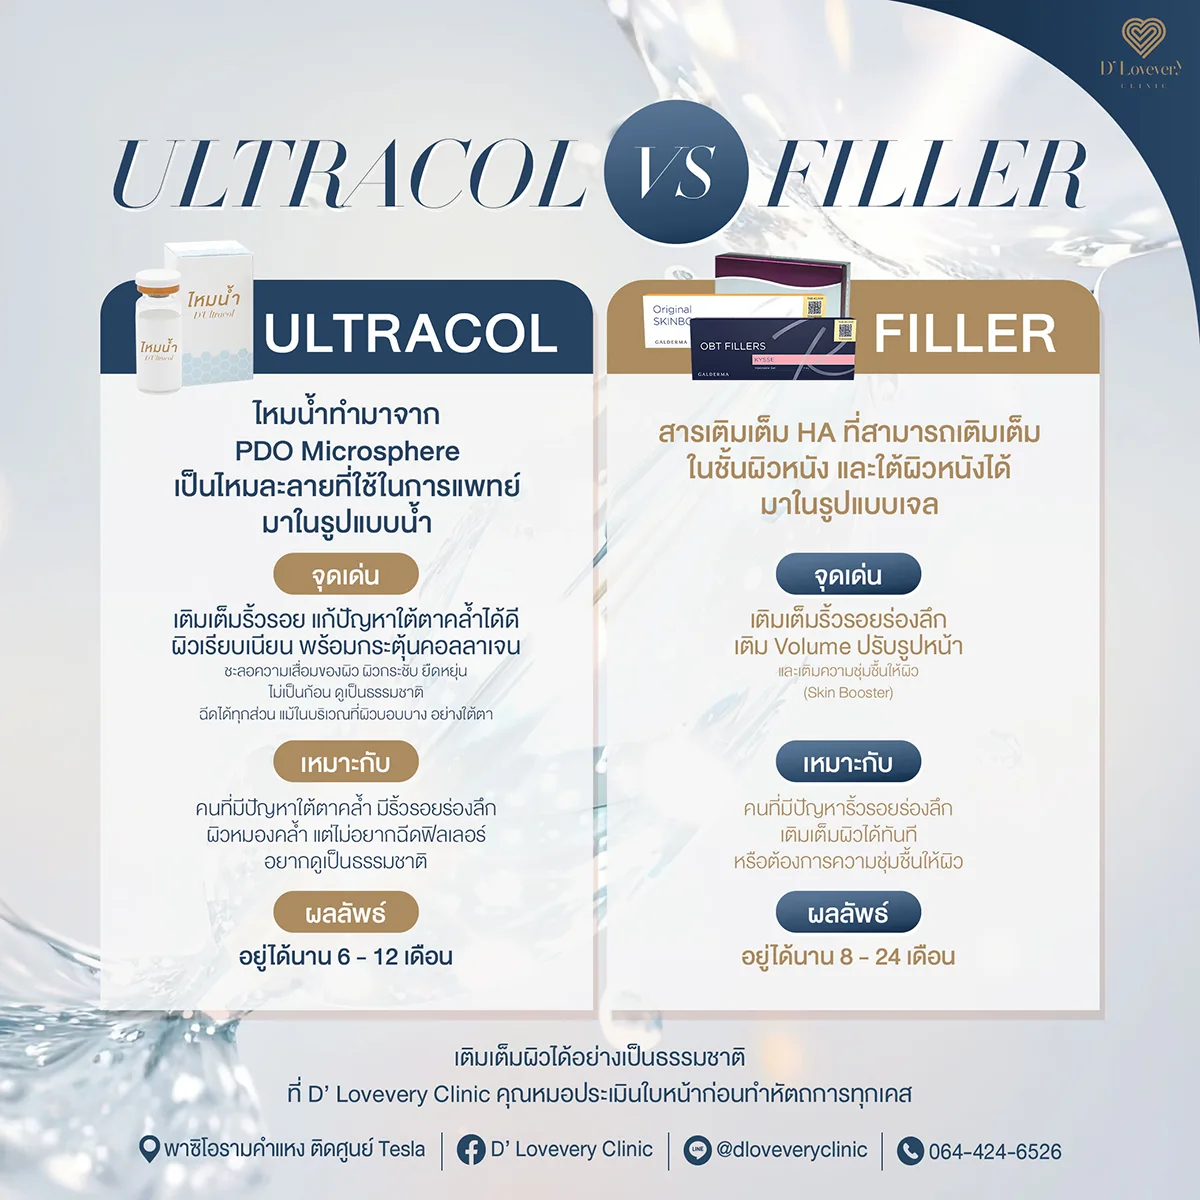 Ultracol-vs-Filler